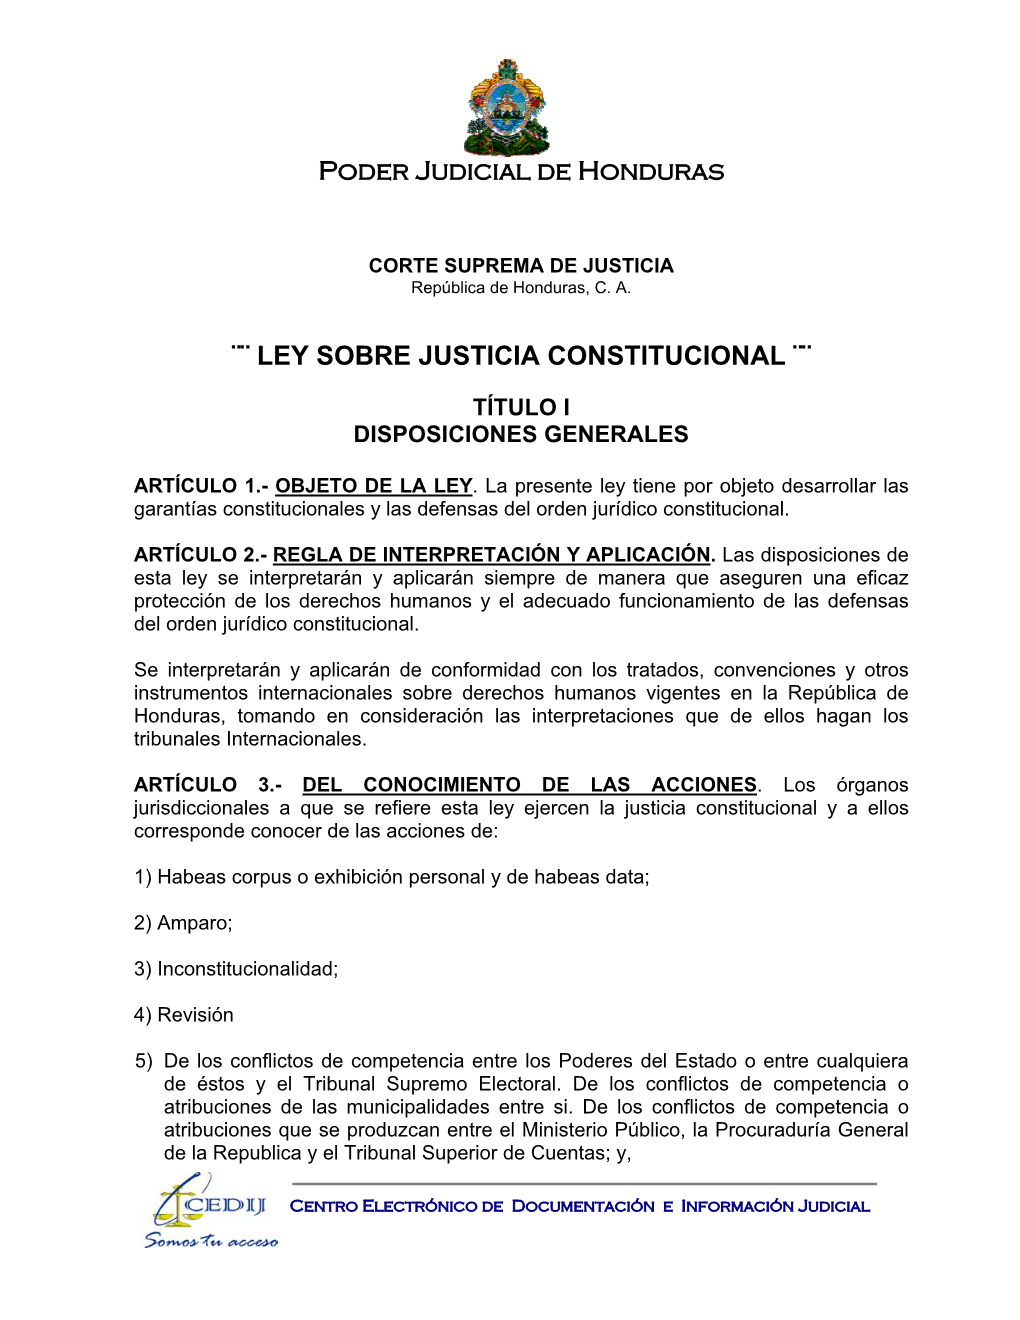 Ley Sobre Justicia Constitucional ¨¨